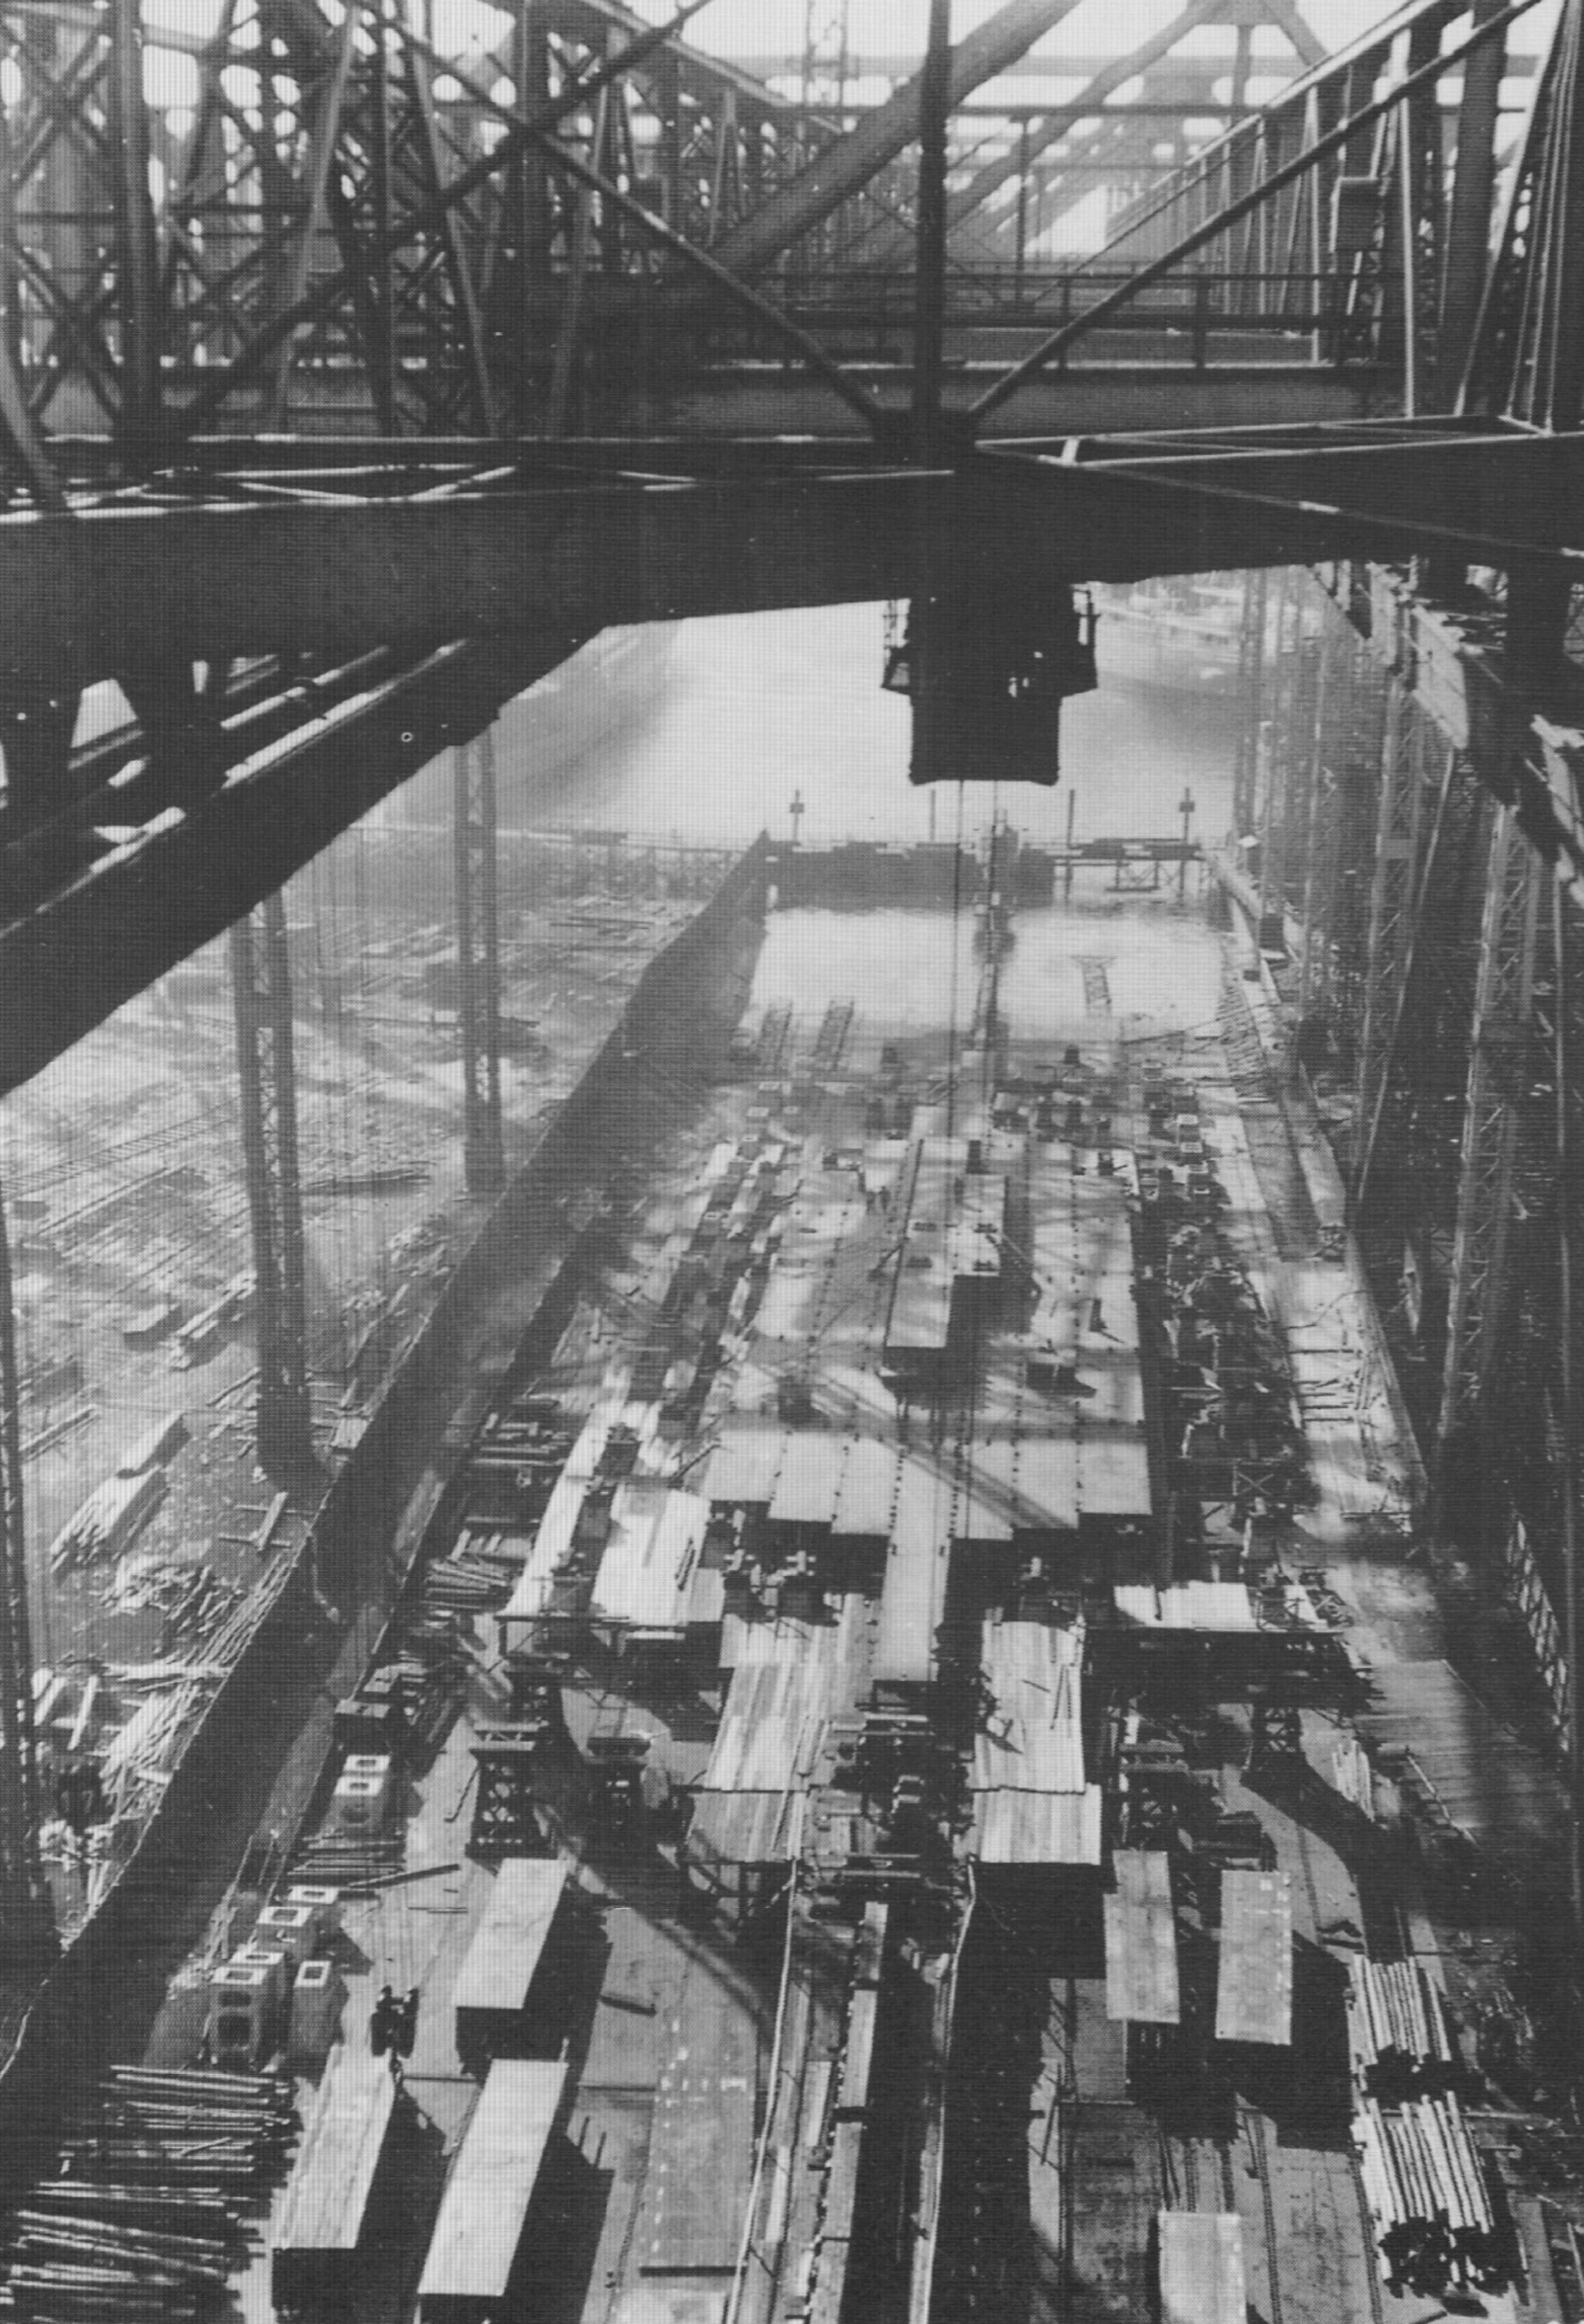 A ship under construction at Vulcan/Howaldtswerke shipyard, Hamburg, Germany, circa 1930